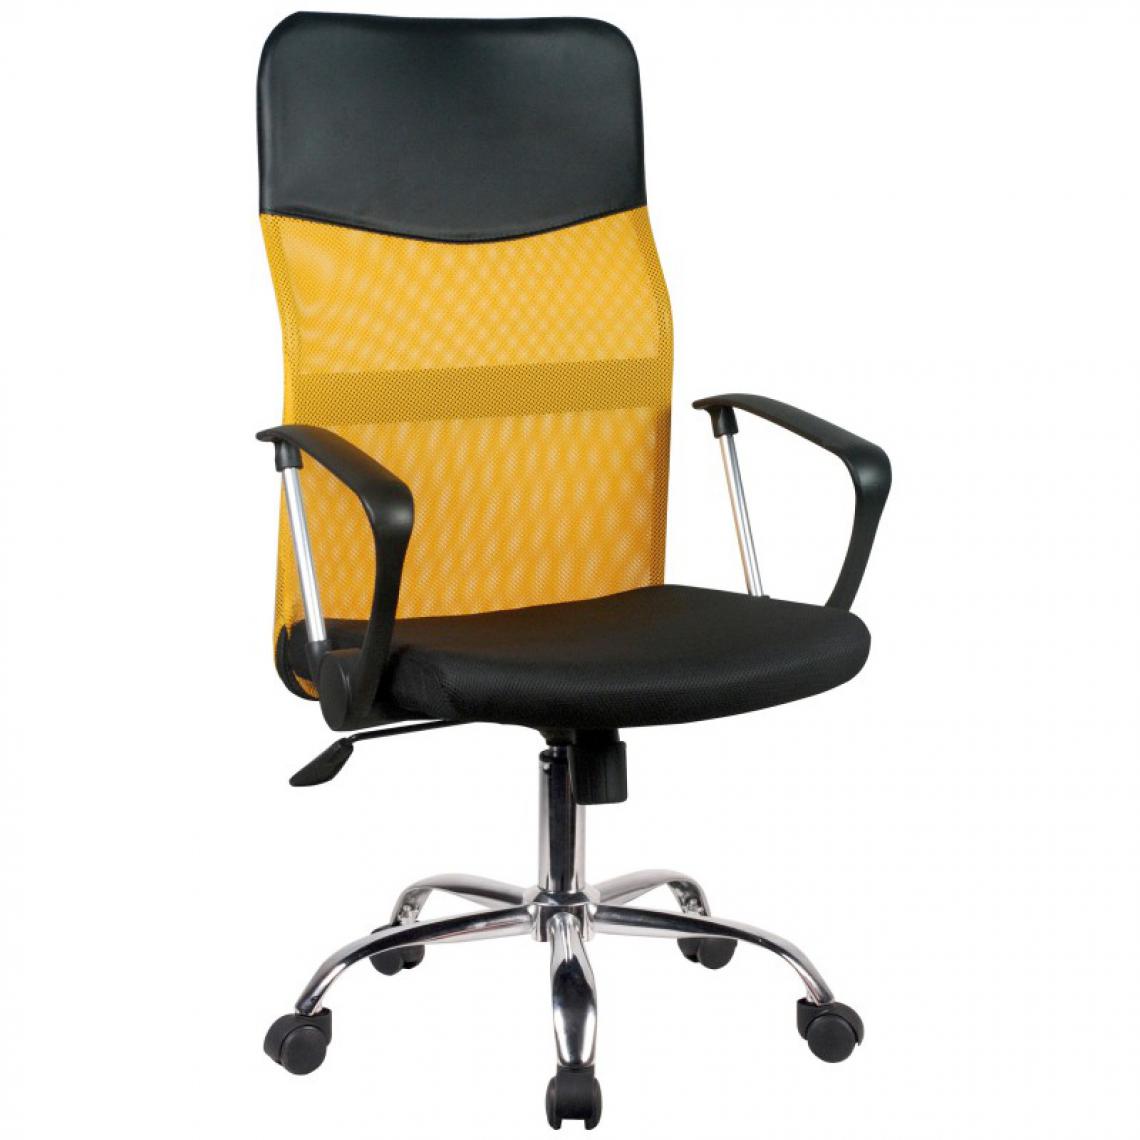 Hucoco - TANJE - Chaise de bureau pivotante - Hauteur ajustable 105-115cm - Fauteuil pivotant - Dossier ergonomique en Mesh - Orange - Chaises